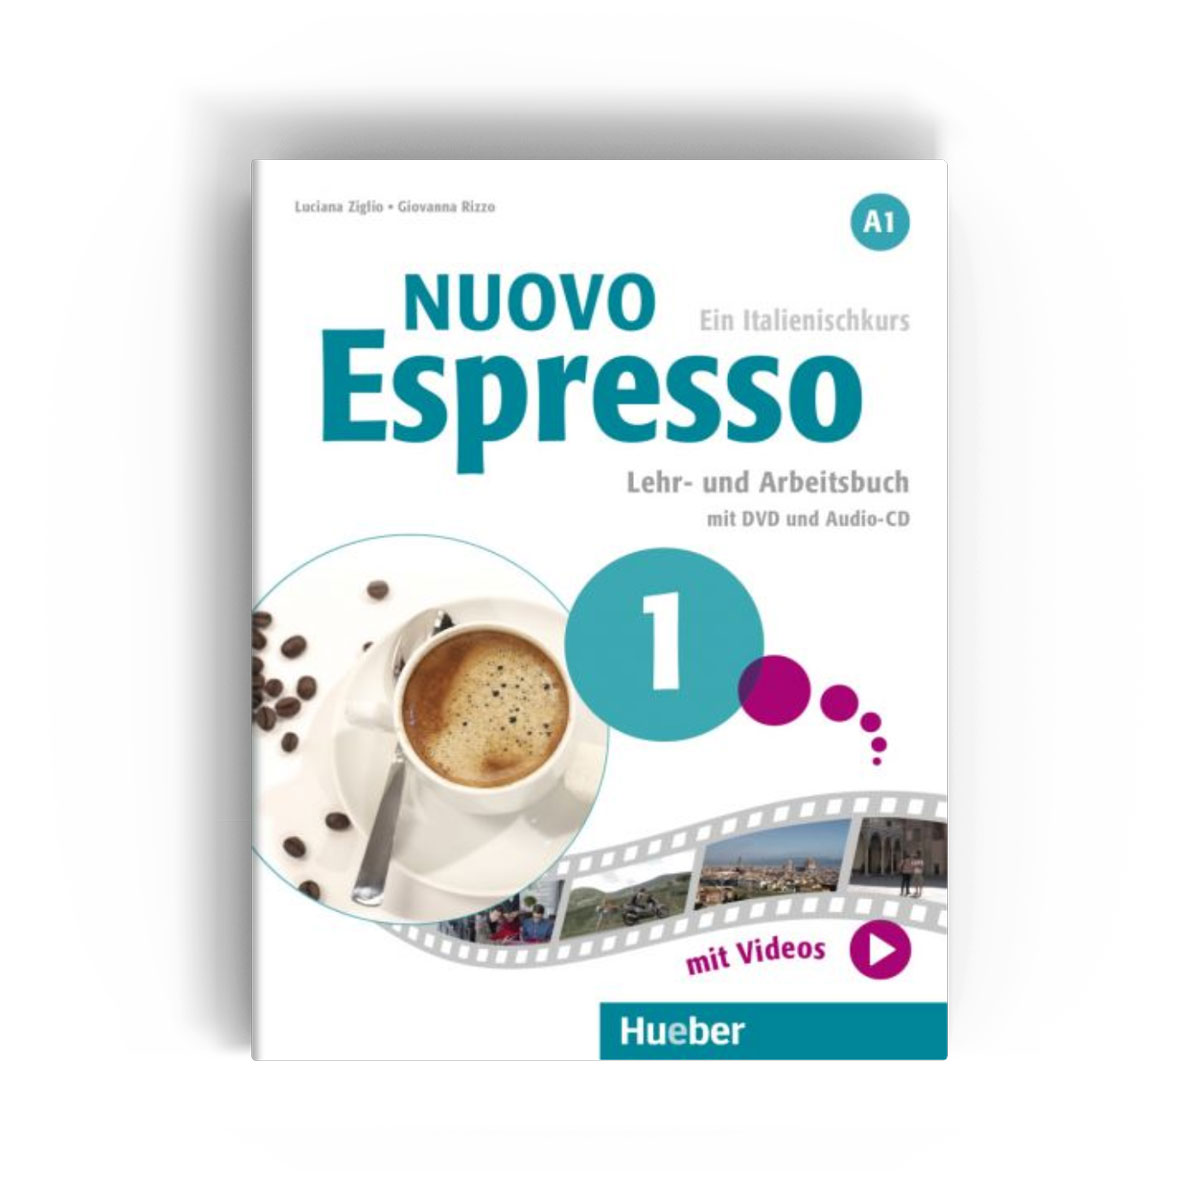 Nuovo espresso hueber | Manuali di italiano per stranieri: un confronto